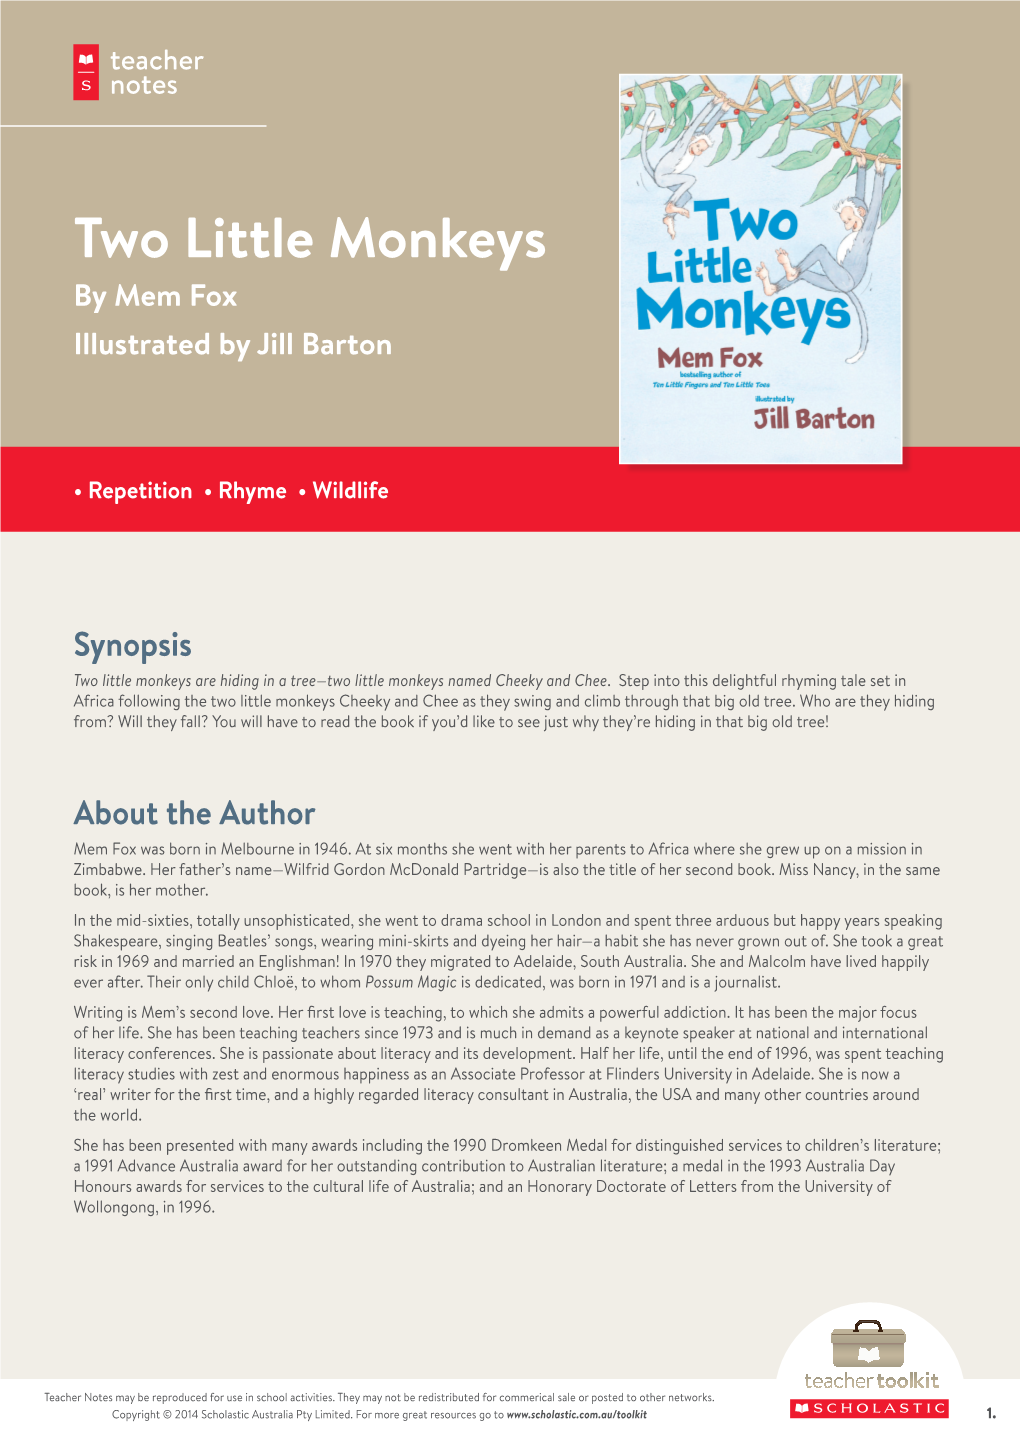 Two Little Monkeys by Mem Fox Illustrated by Jill Barton